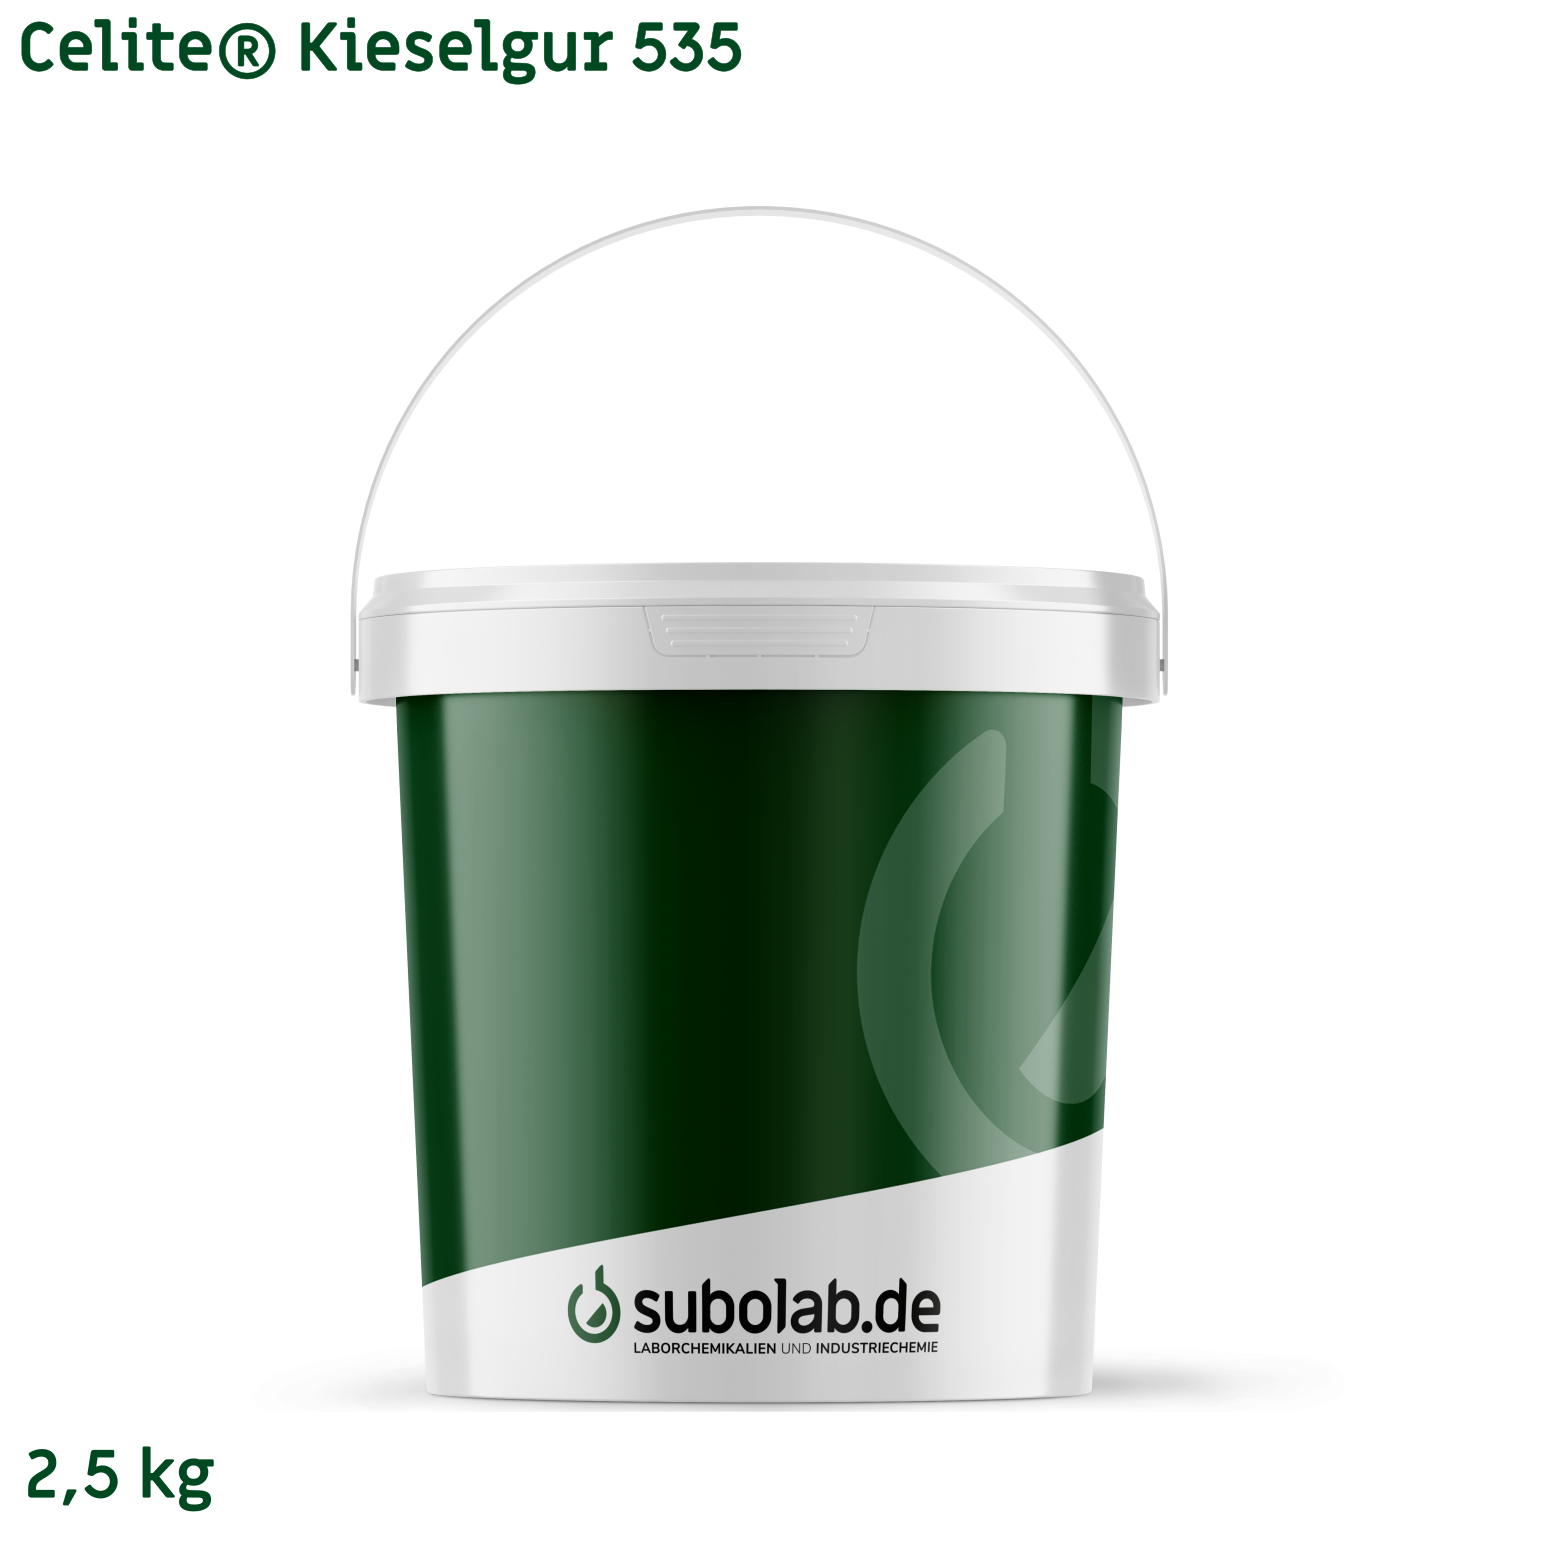 Bild von Celite® Kieselgur 535 (2,5 kg)